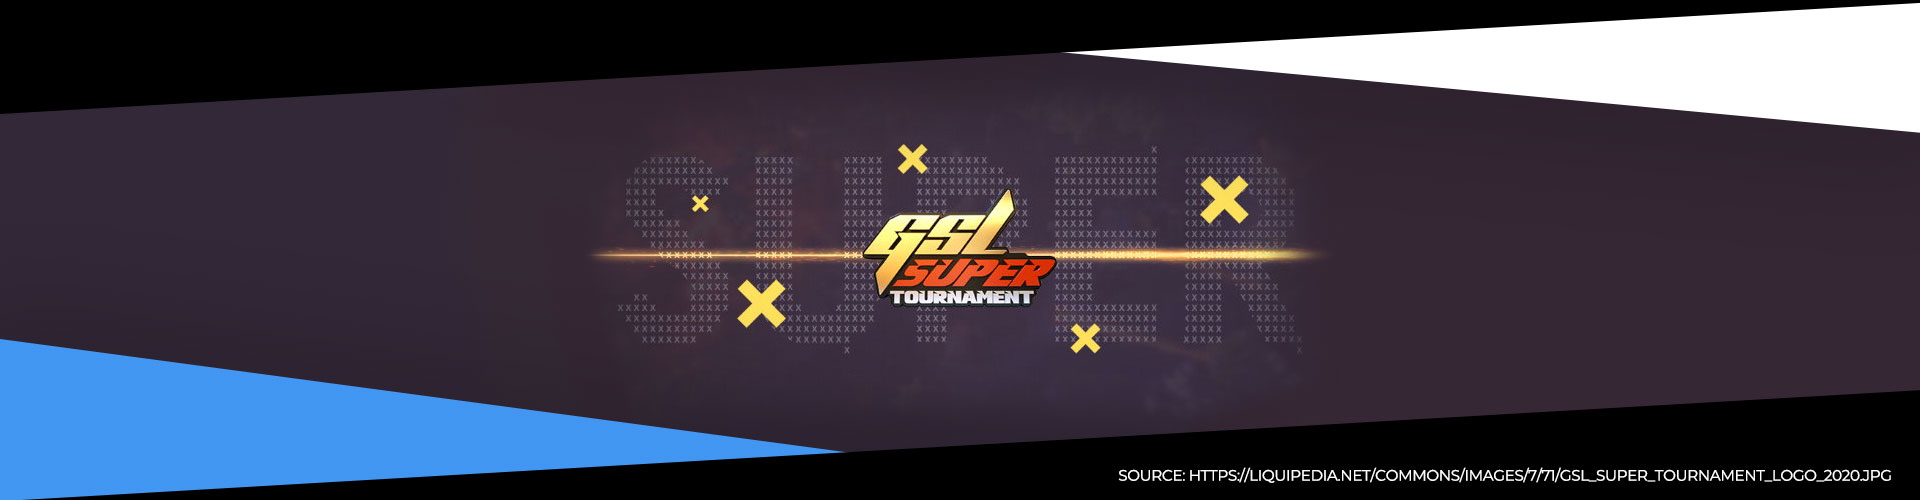 GSL 2020 Super Tournament 1